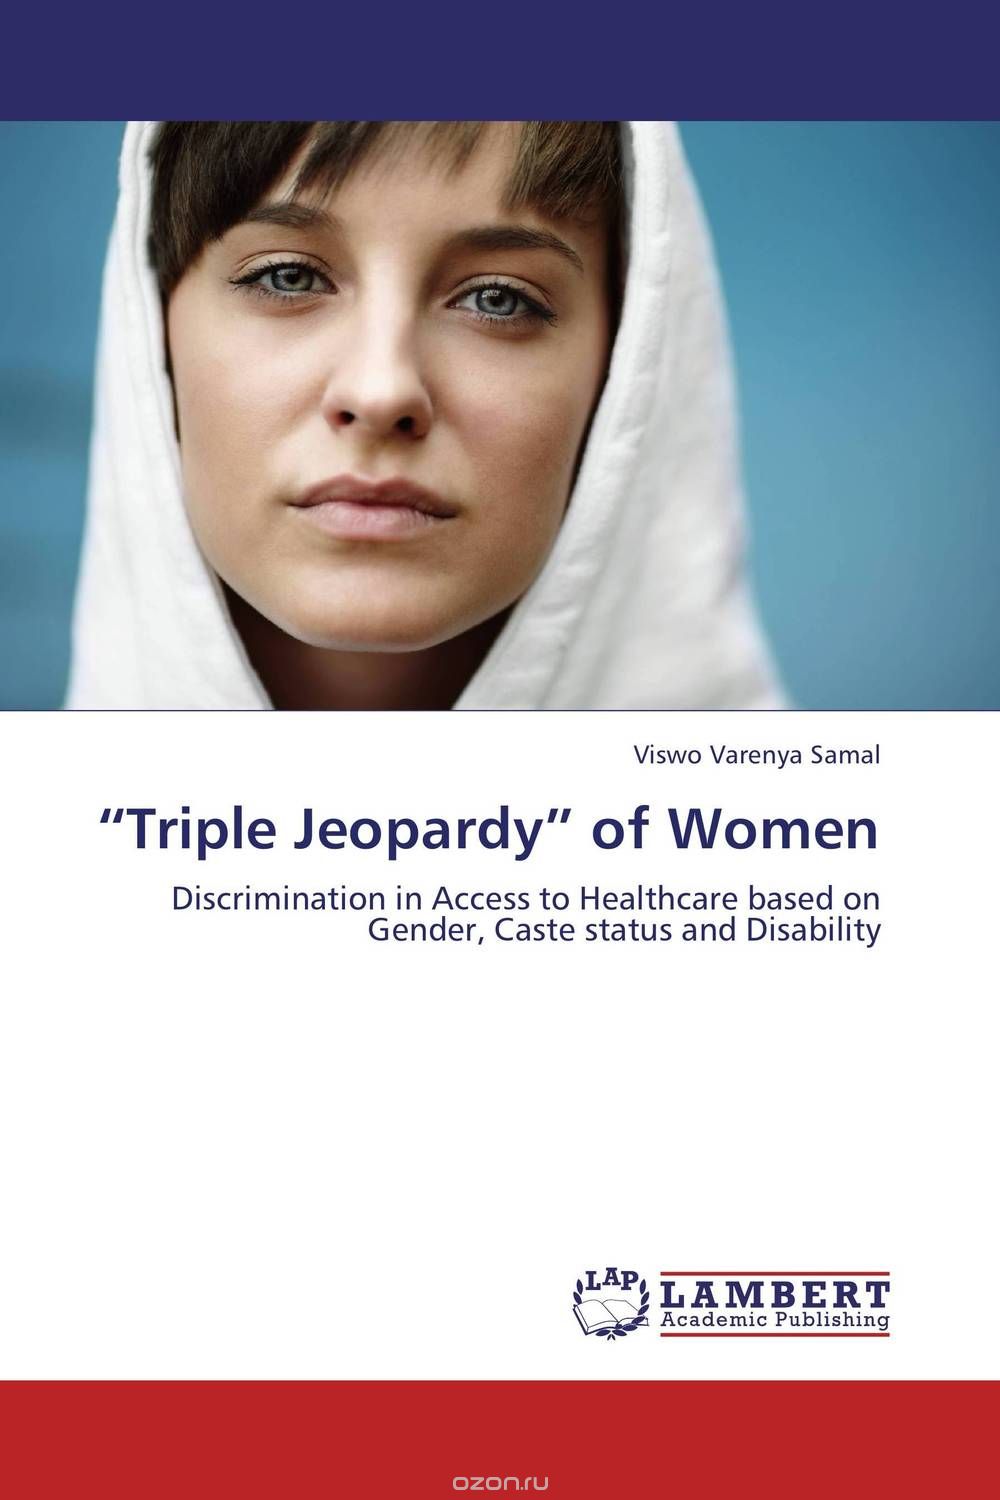 “Triple Jeopardy” of Women